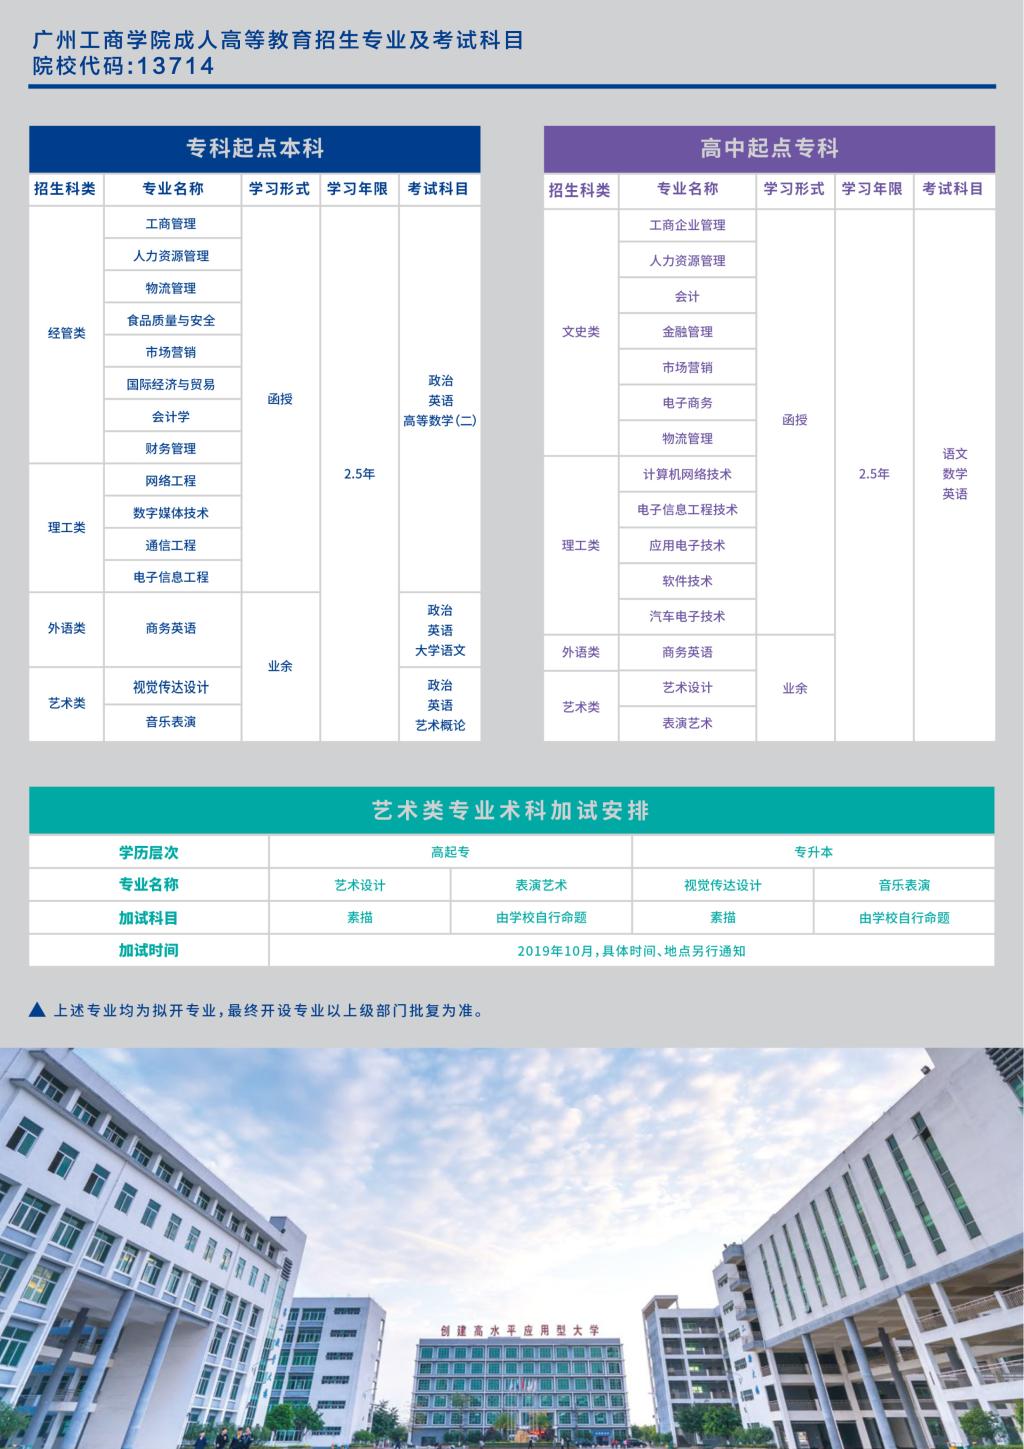 广州工商学院2020年成人教育招生简章